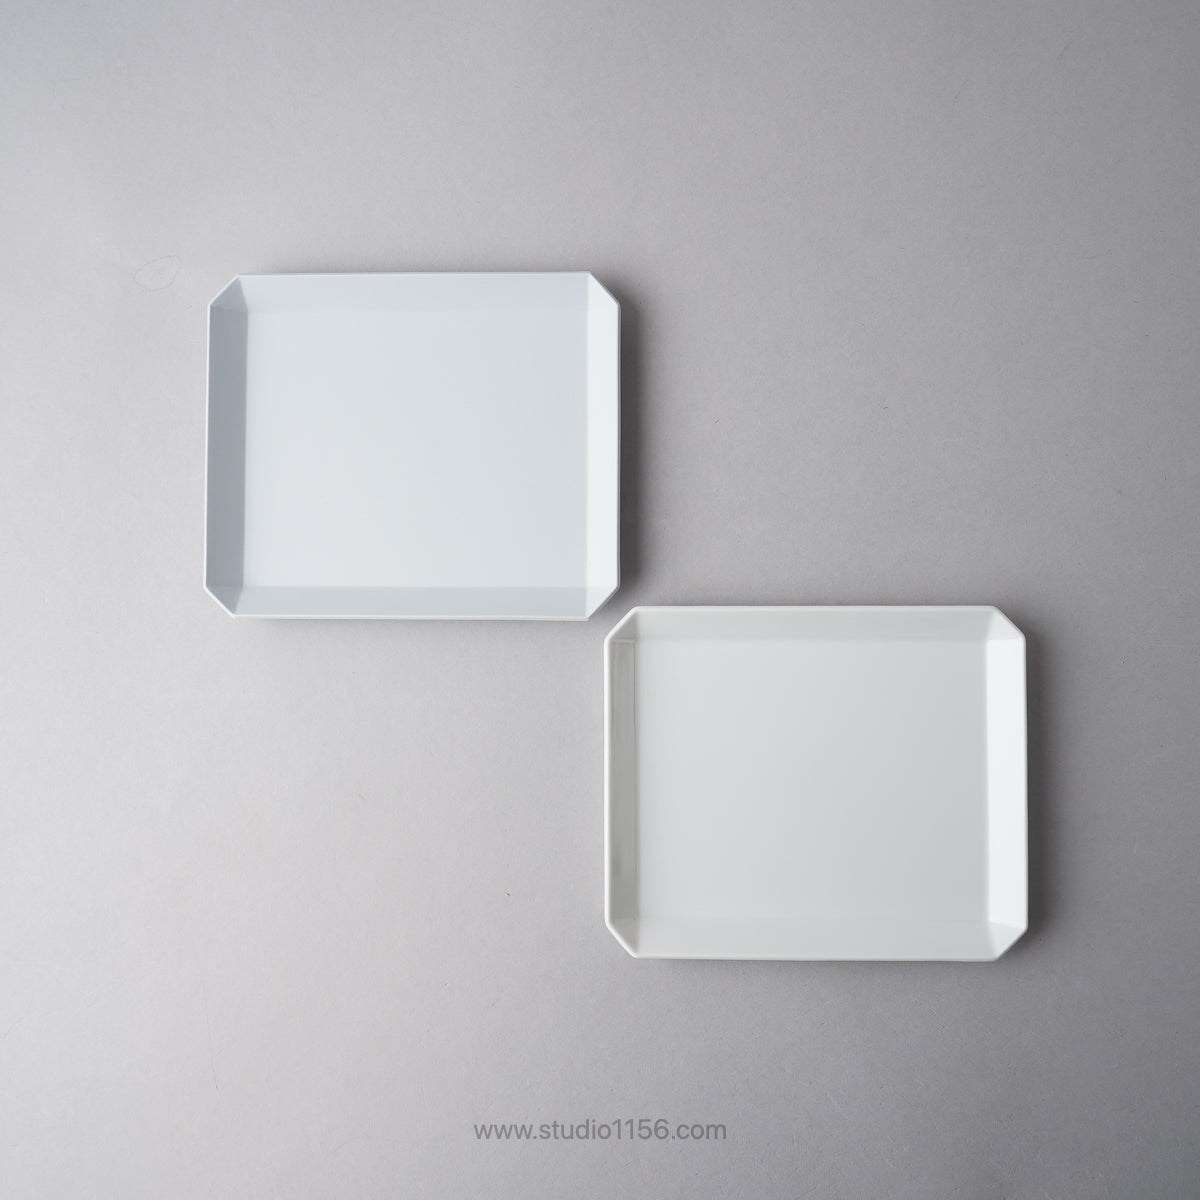 有田焼 スクエアプレート プレーン ホワイト / TY Square Plate Plain White 1616 / Arita Japan Studio1156